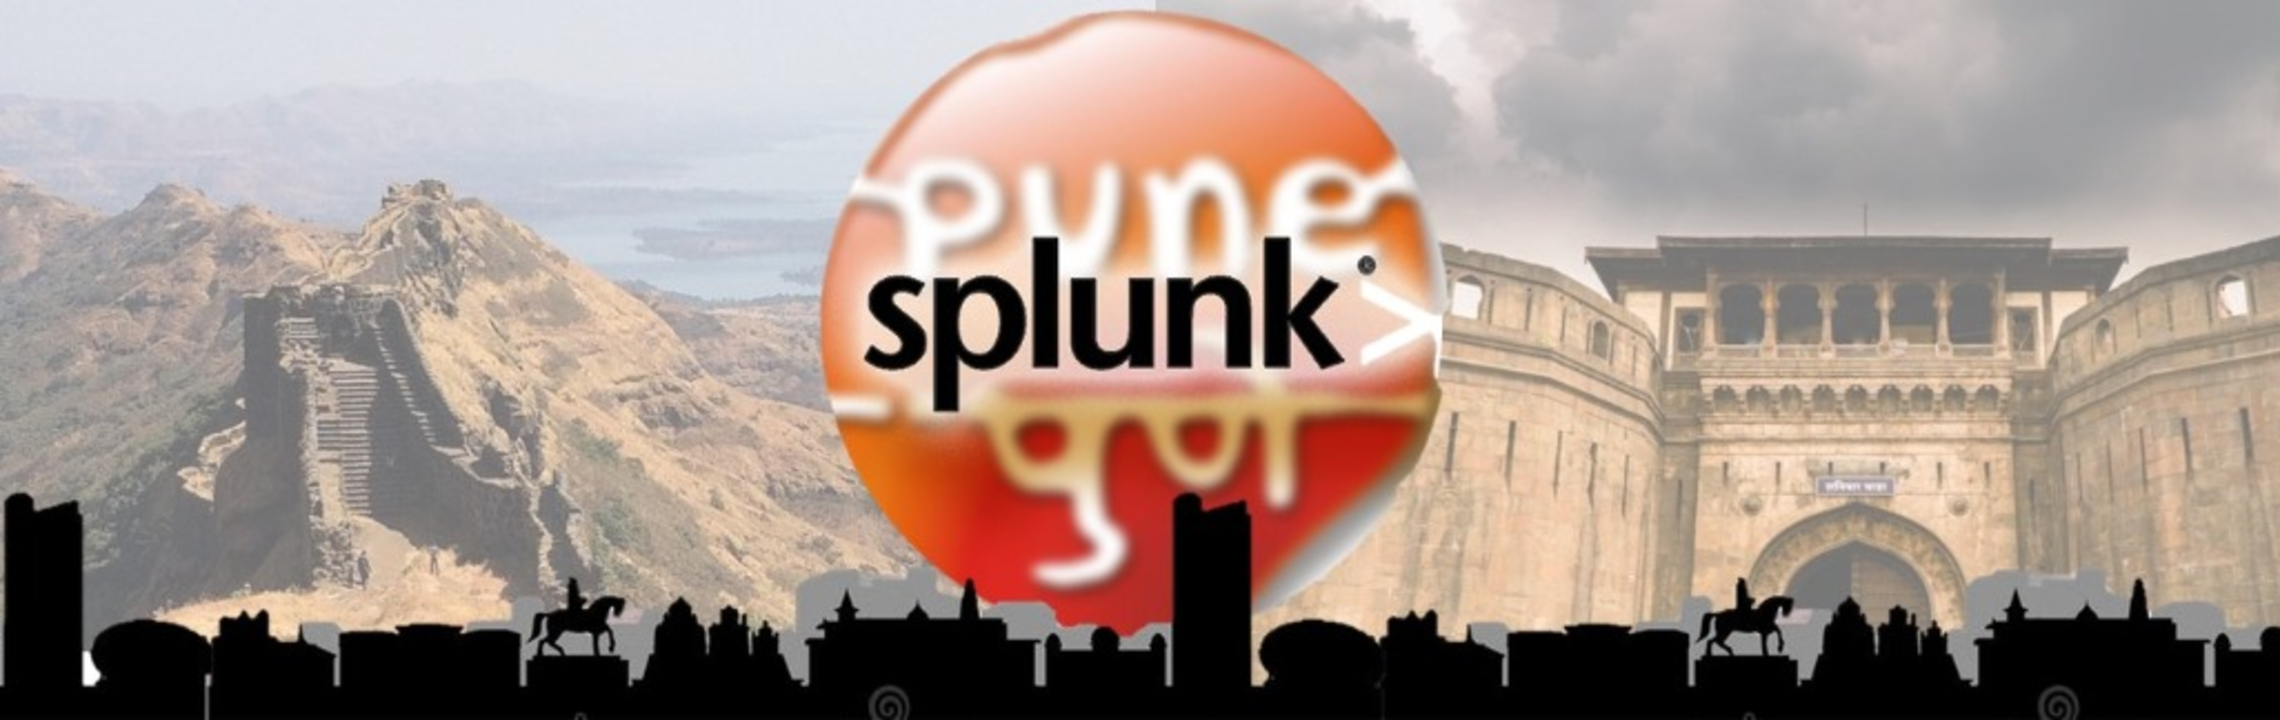 splunk stock forum